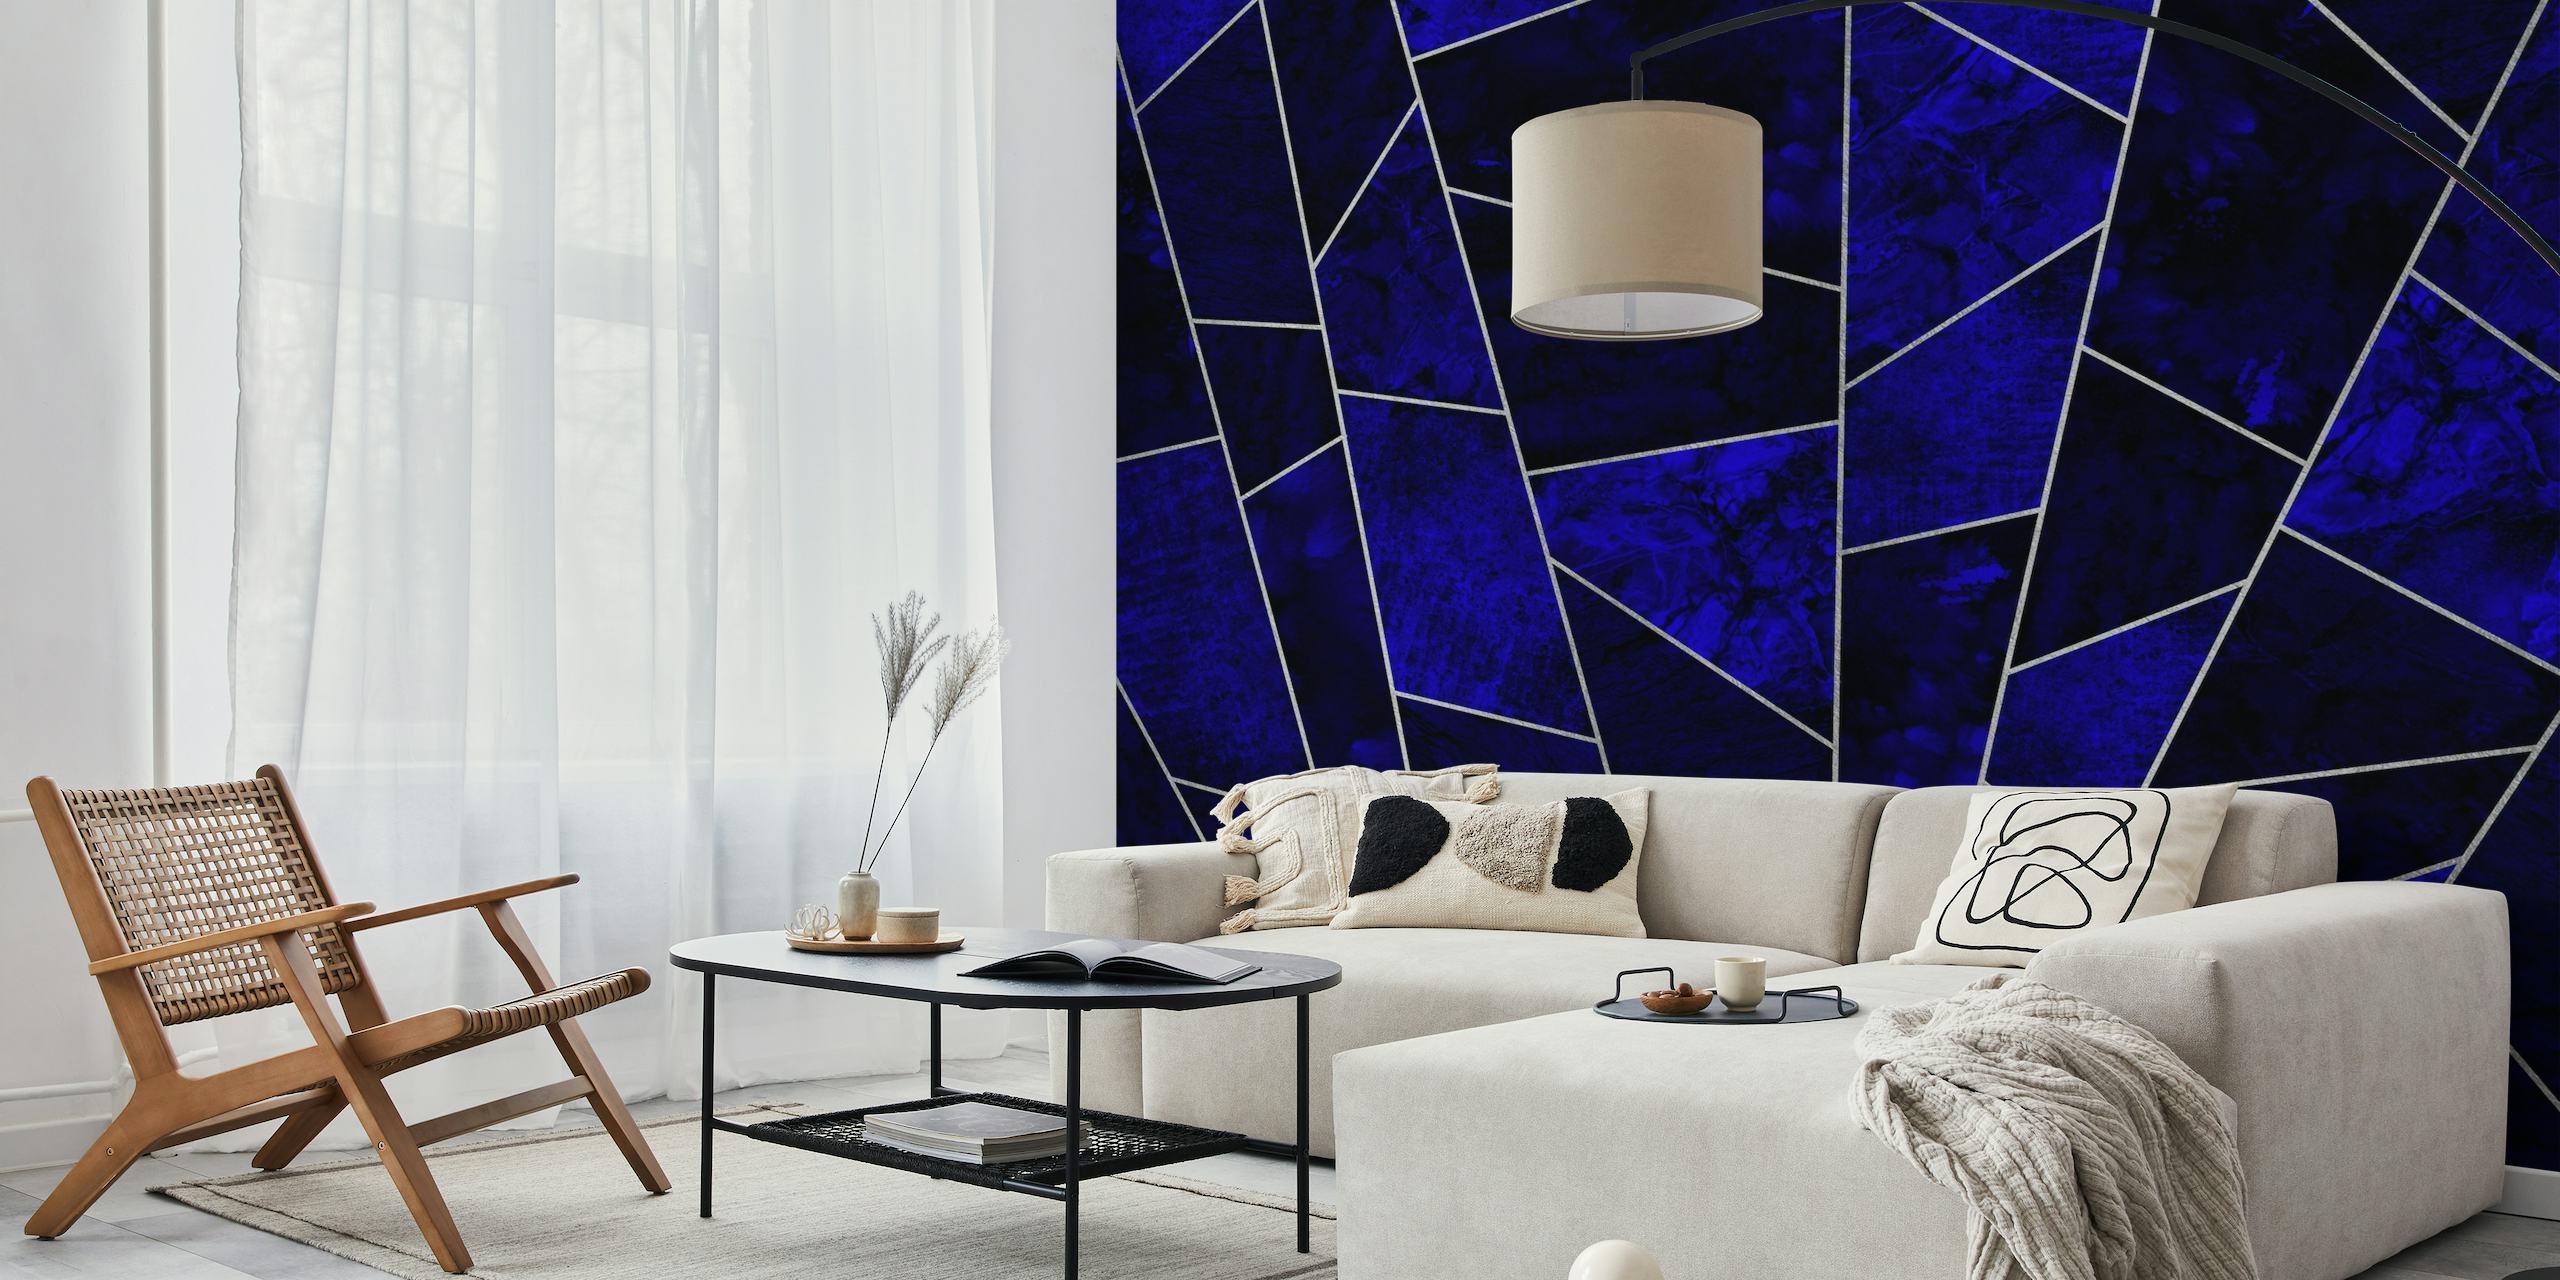 Fotomural elegante patrón de azulejos de zafiro azul intenso con detalles plateados